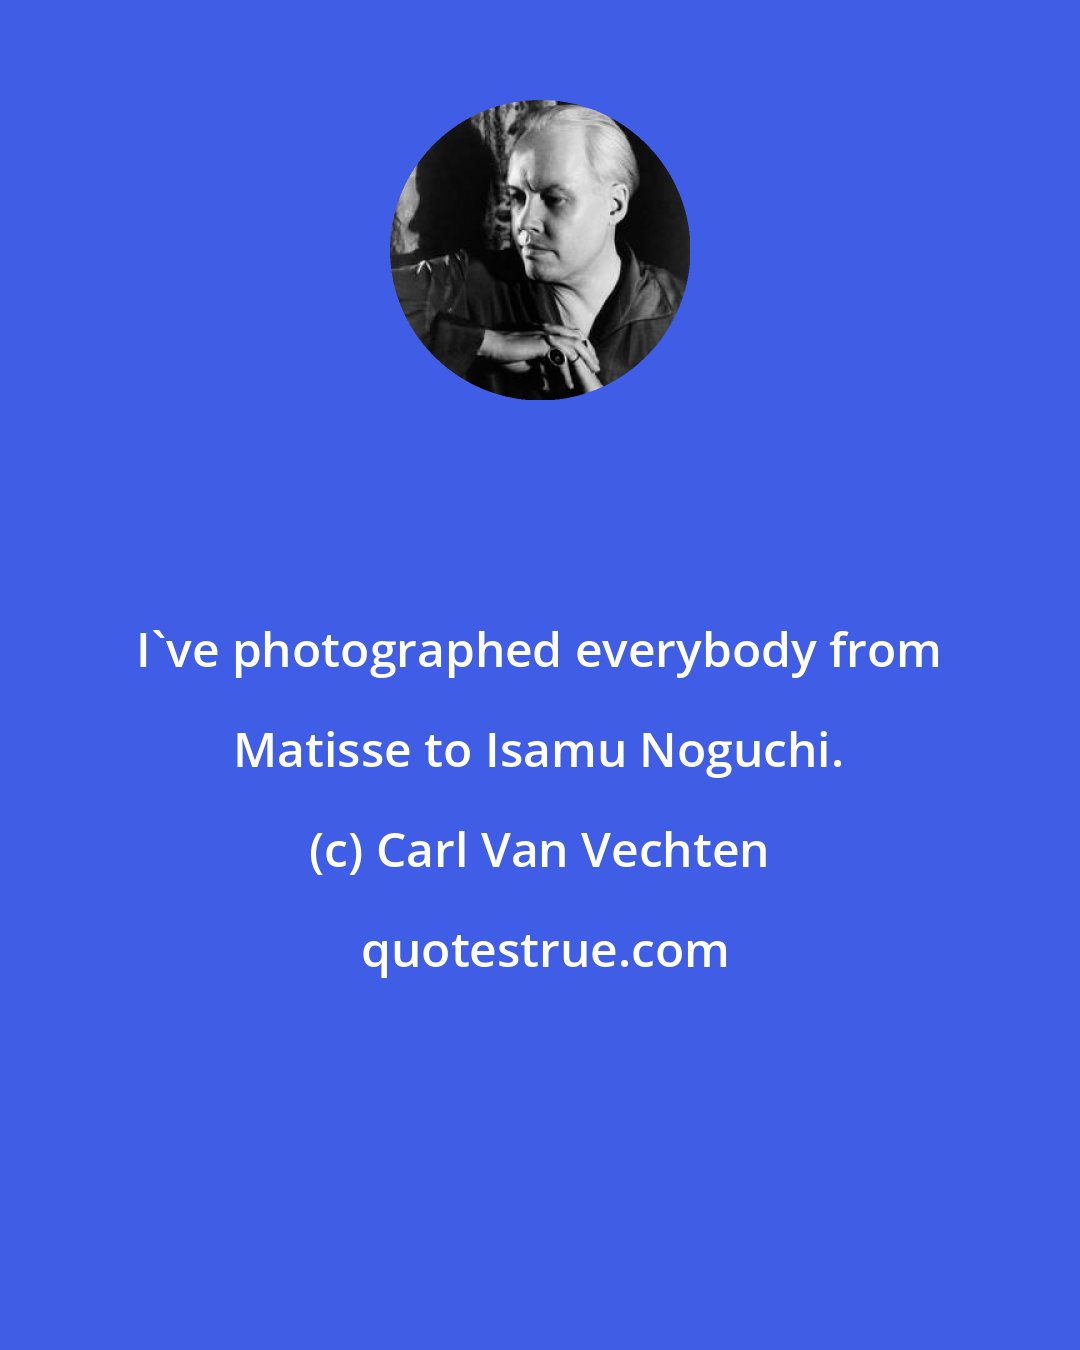 Carl Van Vechten: I've photographed everybody from Matisse to Isamu Noguchi.